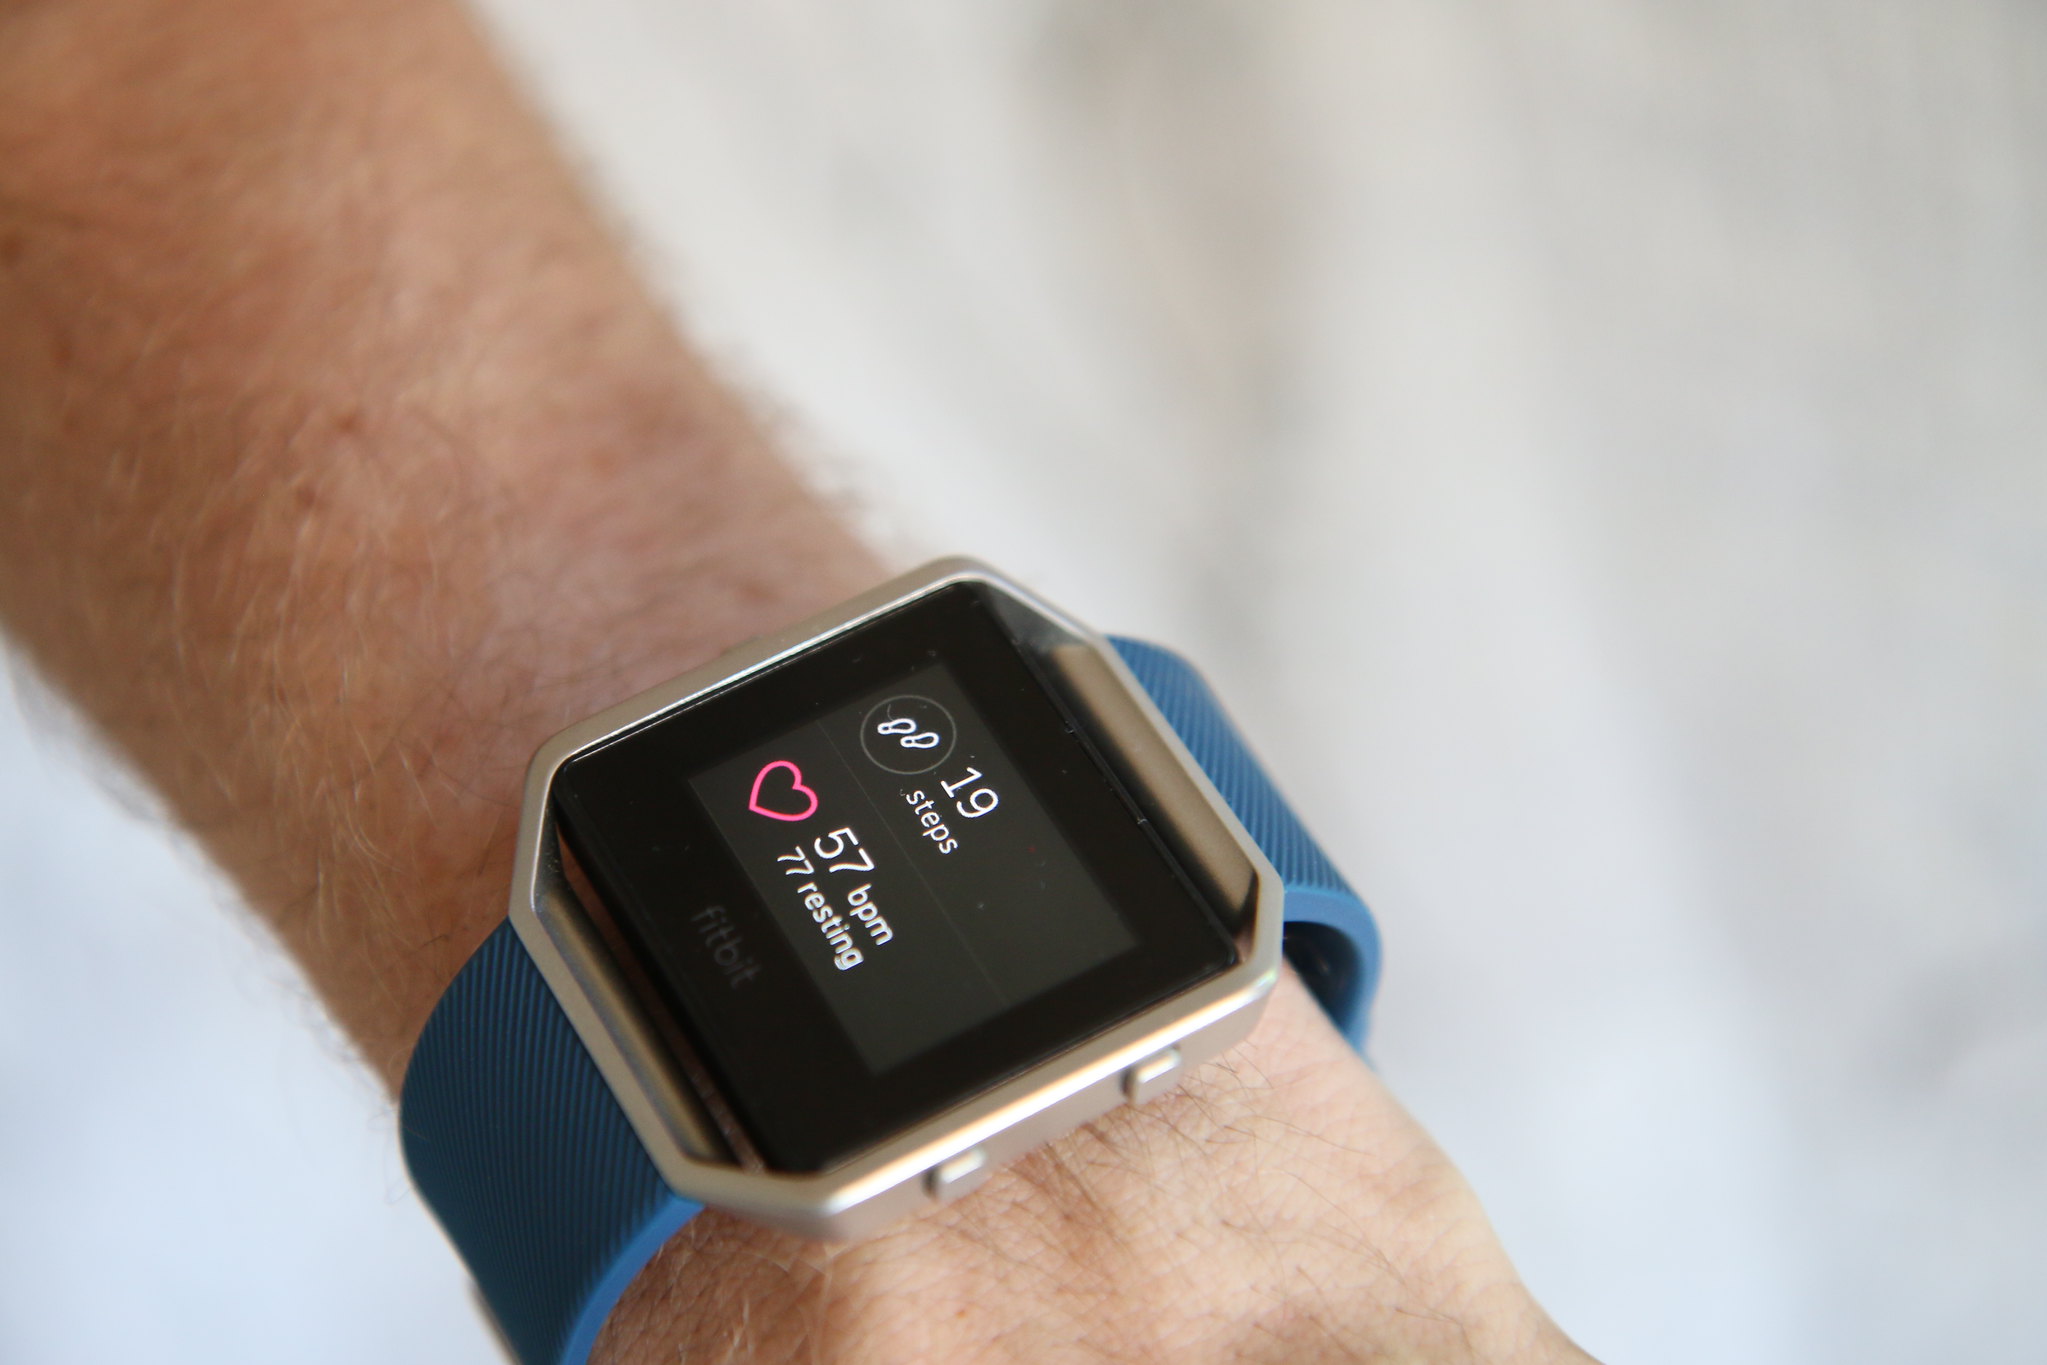 Suite à une plainte de Philips, une enquête vise les montres connectées et Fitbit et Garmin